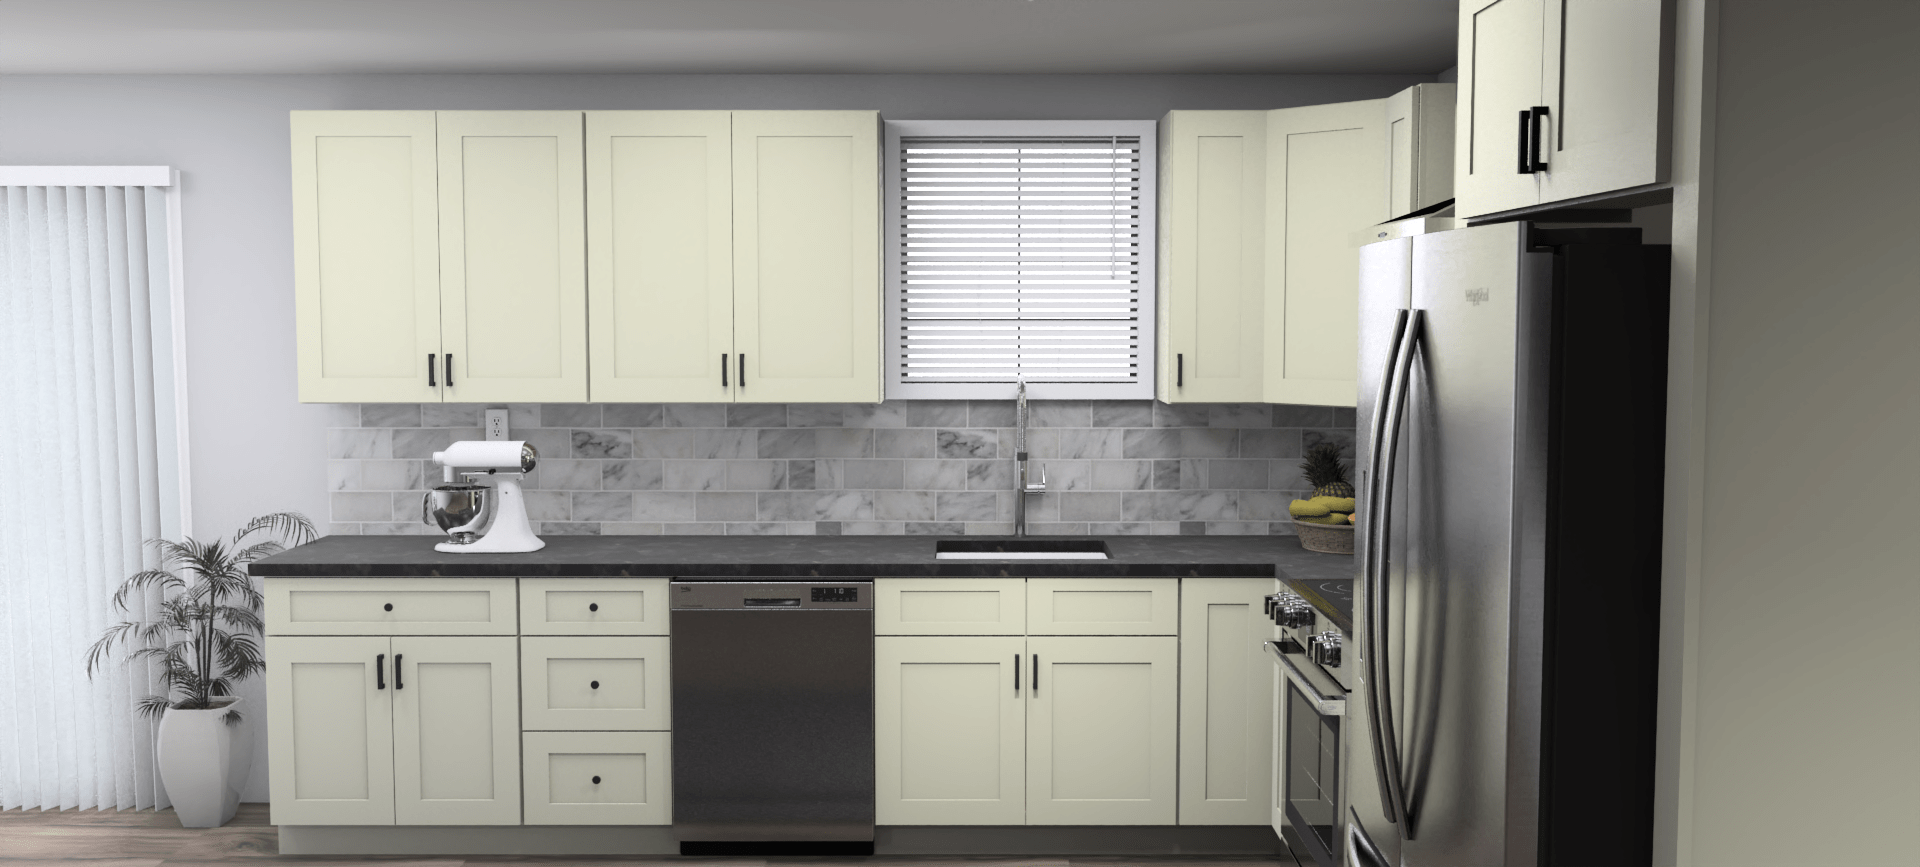 Fabuwood Allure Galaxy Linen 12 x 11 L Shaped Kitchen Side Layout Photo